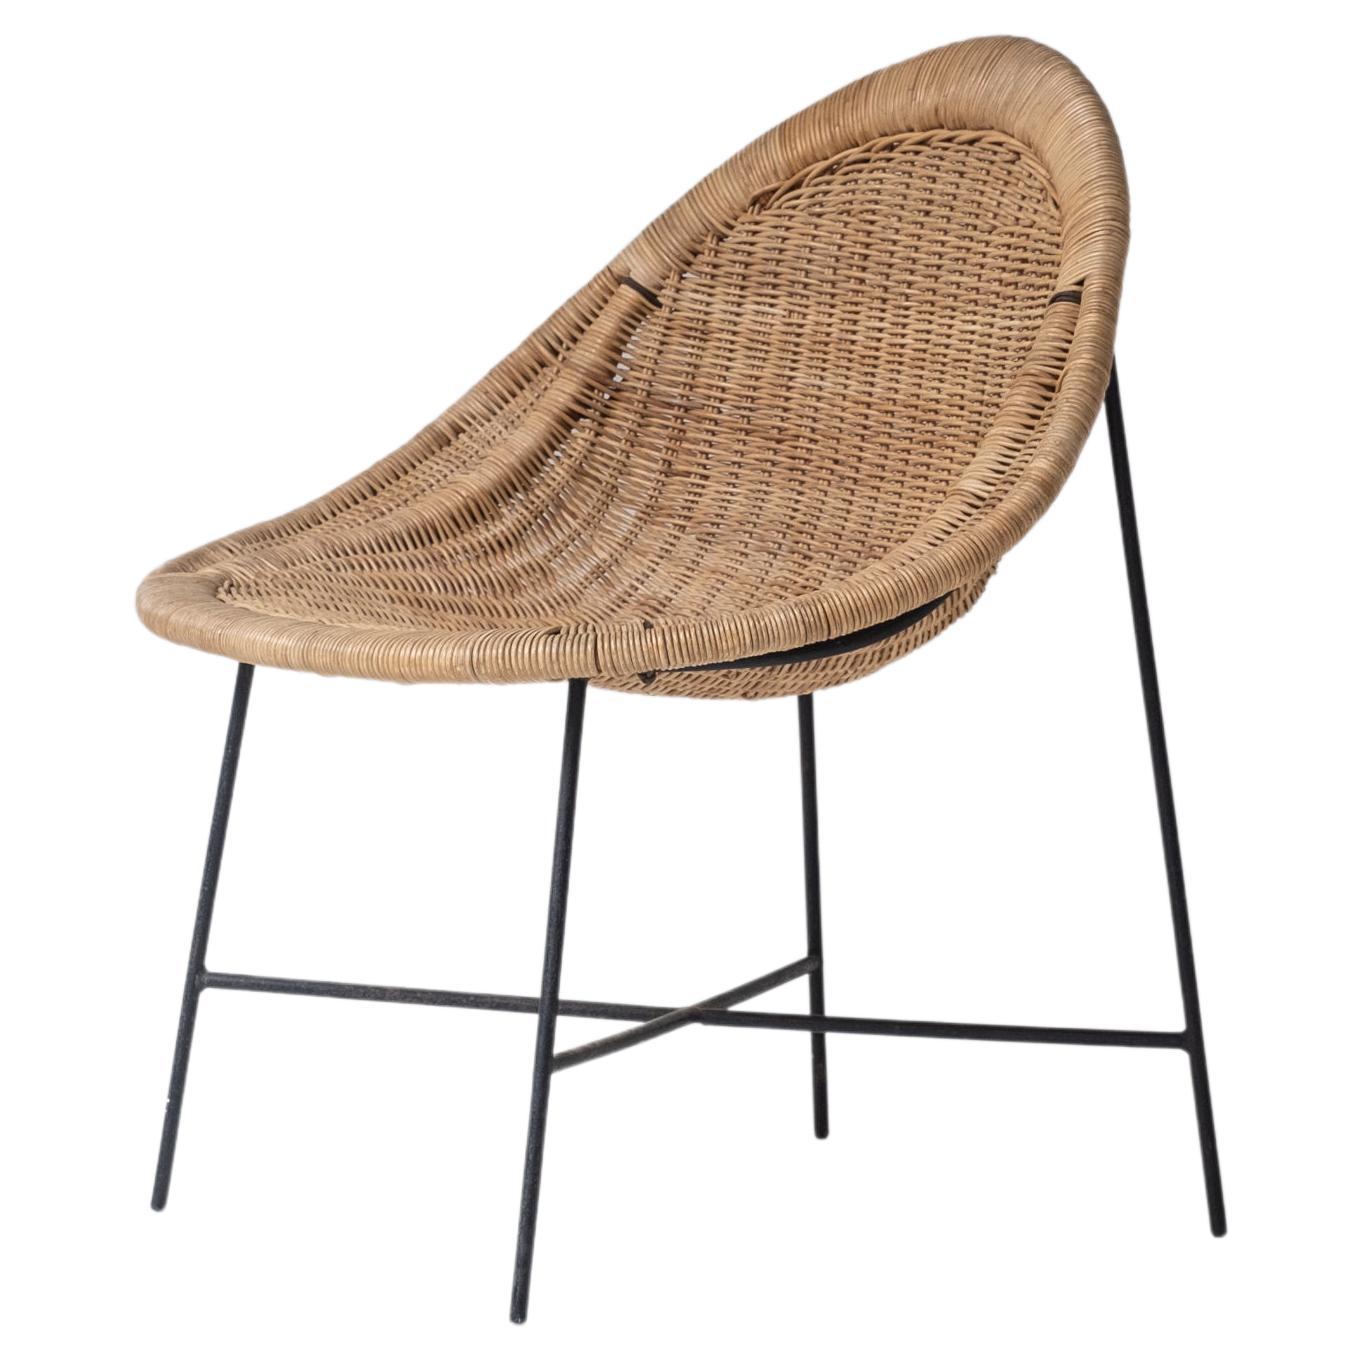 ‘Stora Kraal’ lounge chair by Kerstin Hörlin-Holmquist, Sweden 1950s